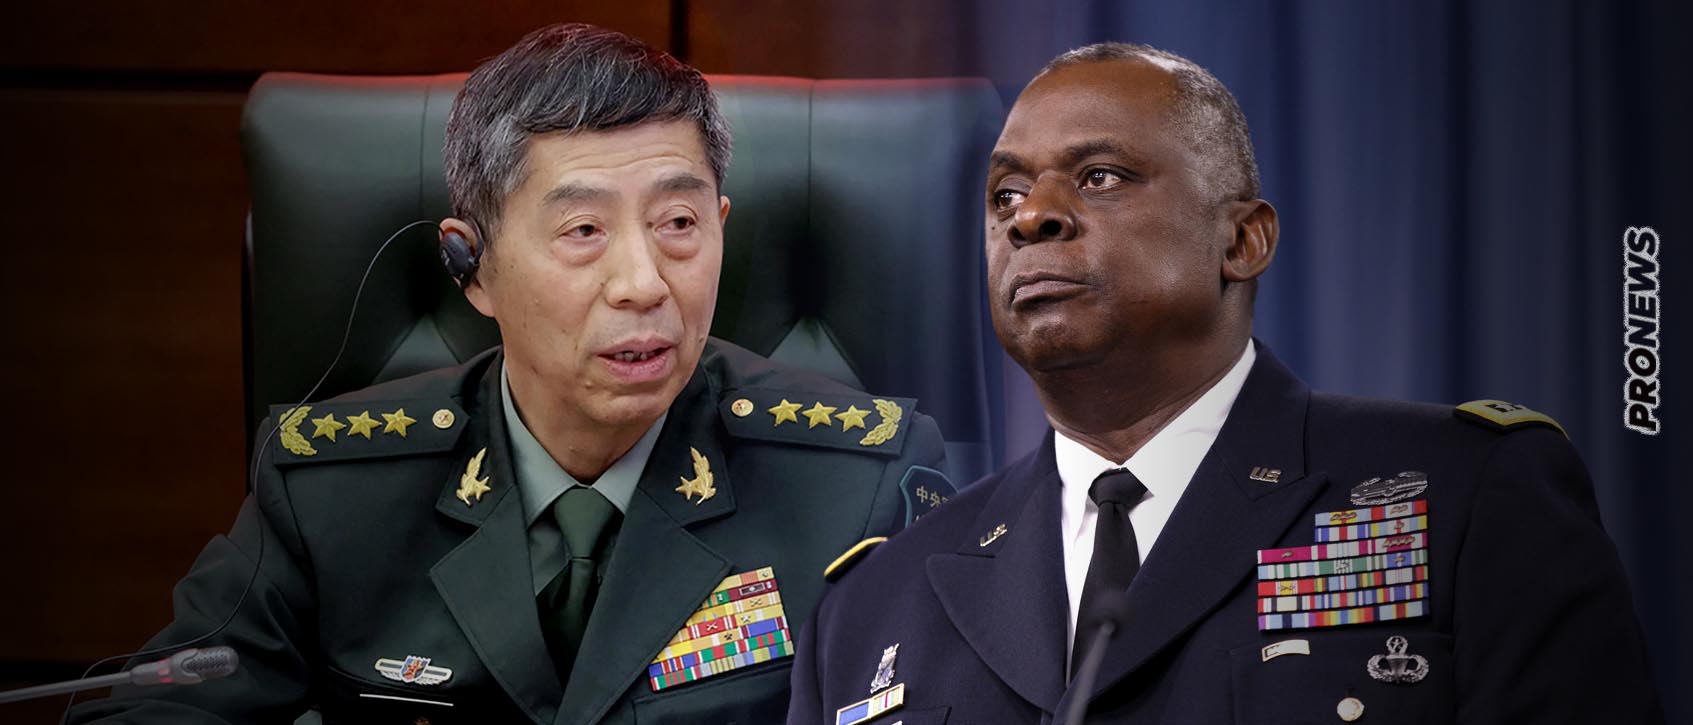 Κίνδυνος ανεξέλεγκτης κλιμάκωσης: Η Κίνα προκαλεί ευθέως τις ΗΠΑ – «Κανένας  στρατιωτικός διάλογος μεταξύ μας»!